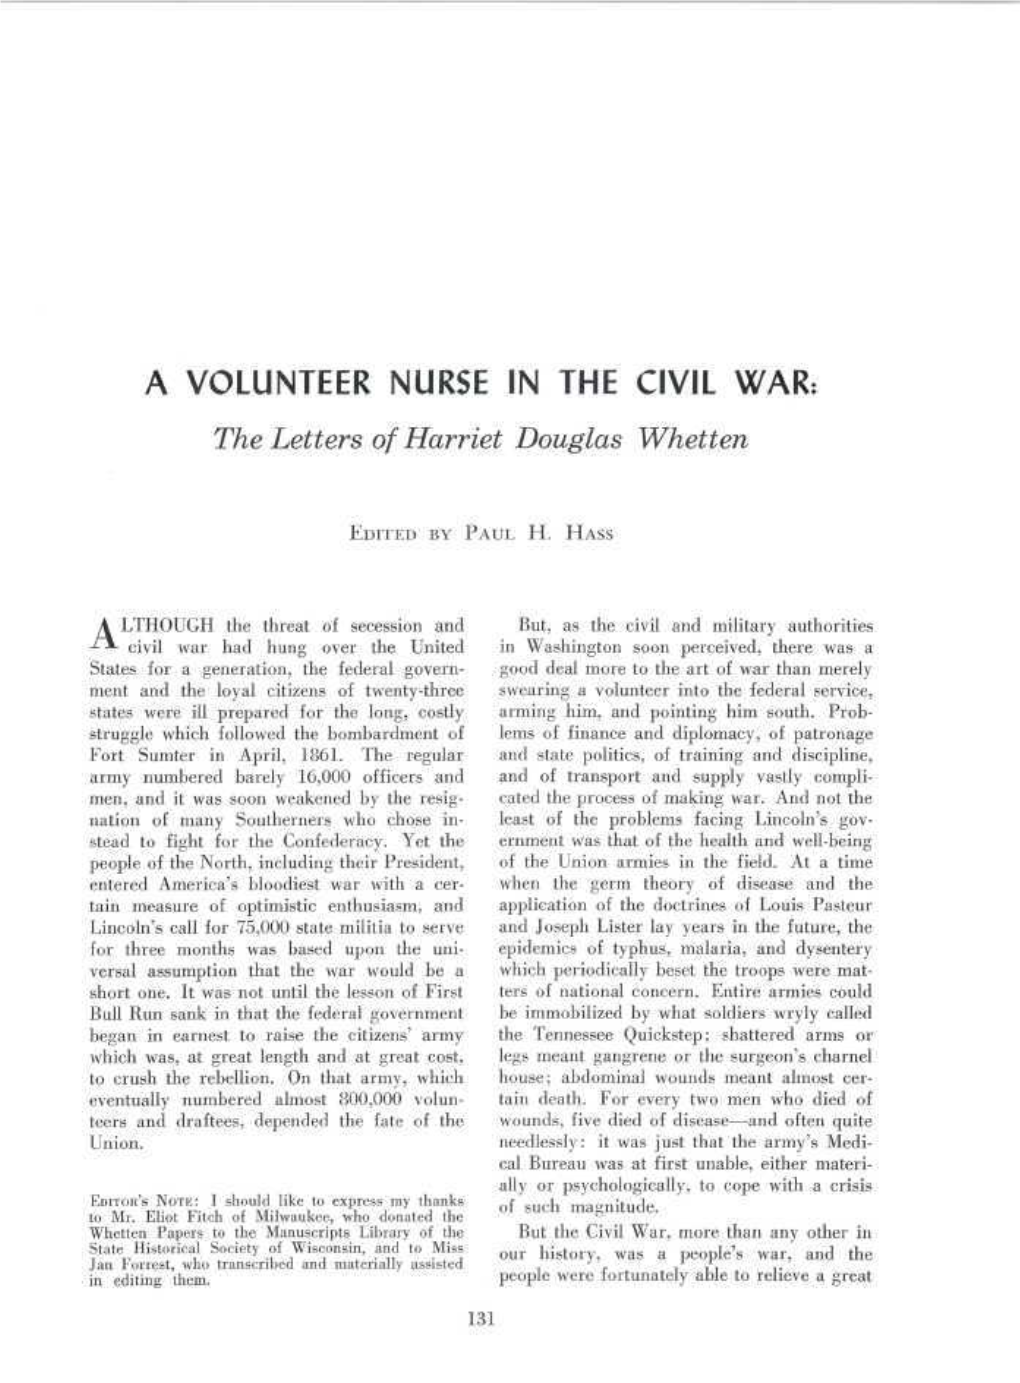 A VOLUNTEER NURSE in the CIVIL WAR: the Letters of Harriet Douglas Whetten